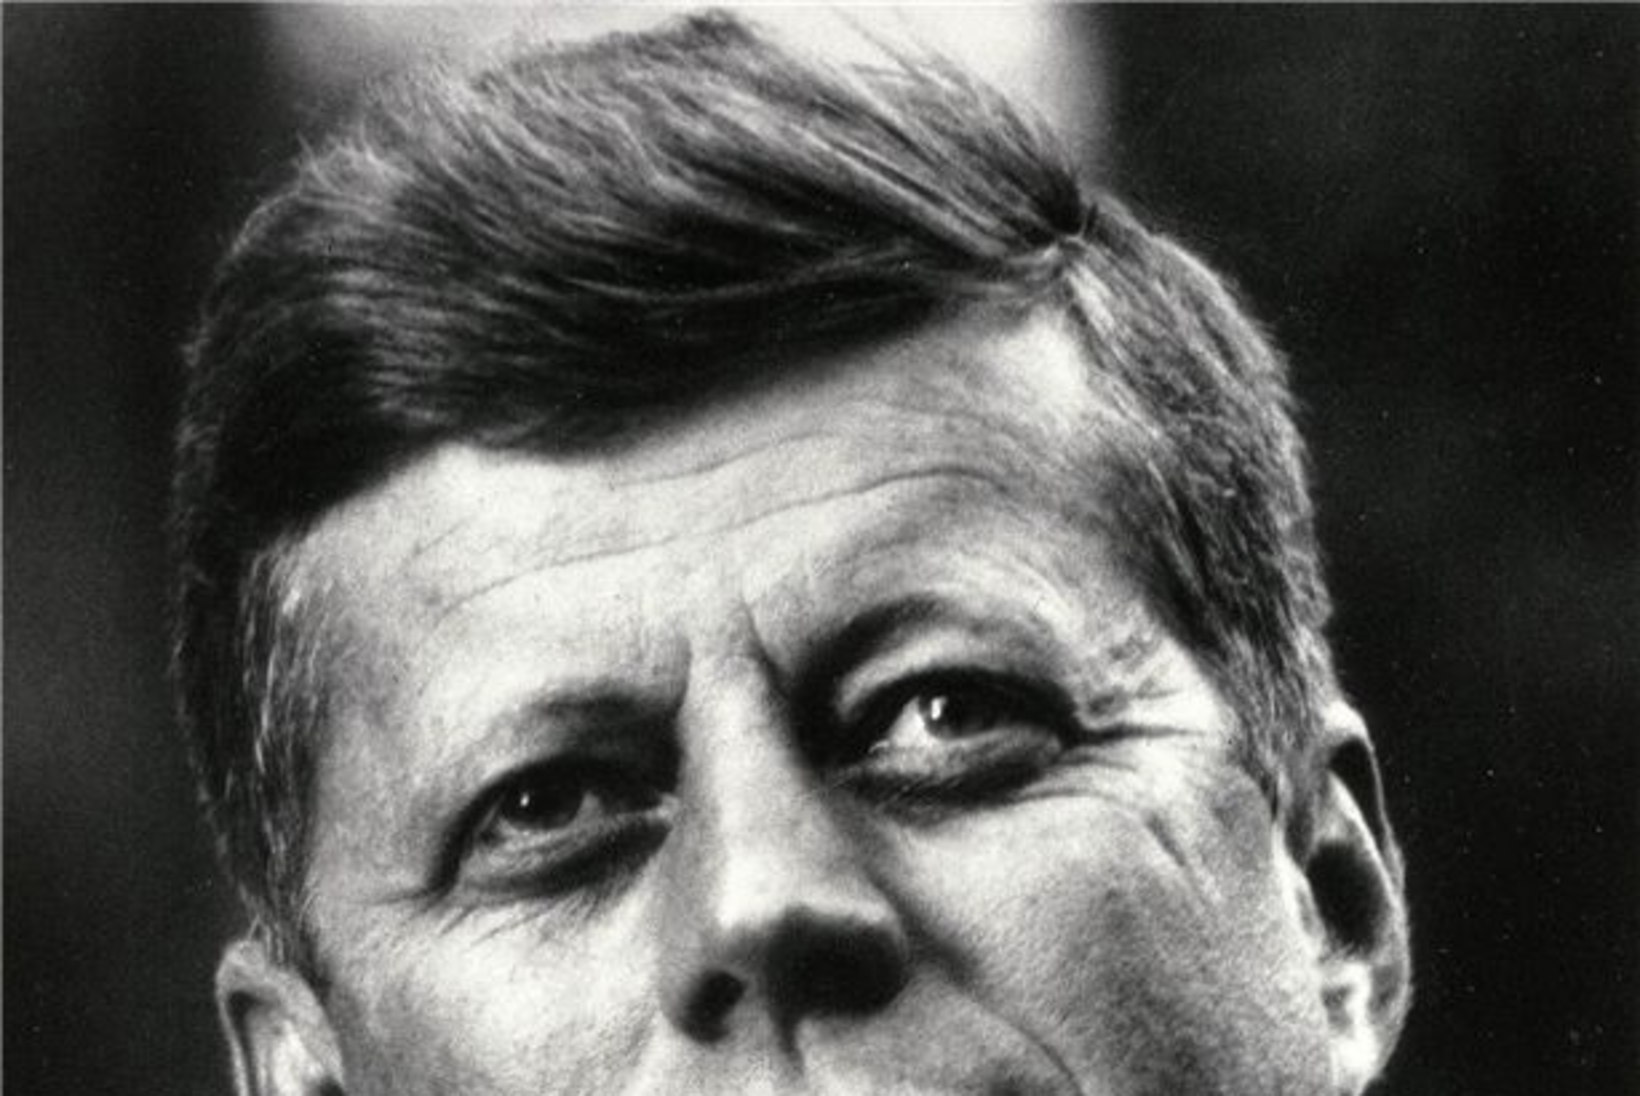 John F. Kennedy tervis oli üllatavalt vilets